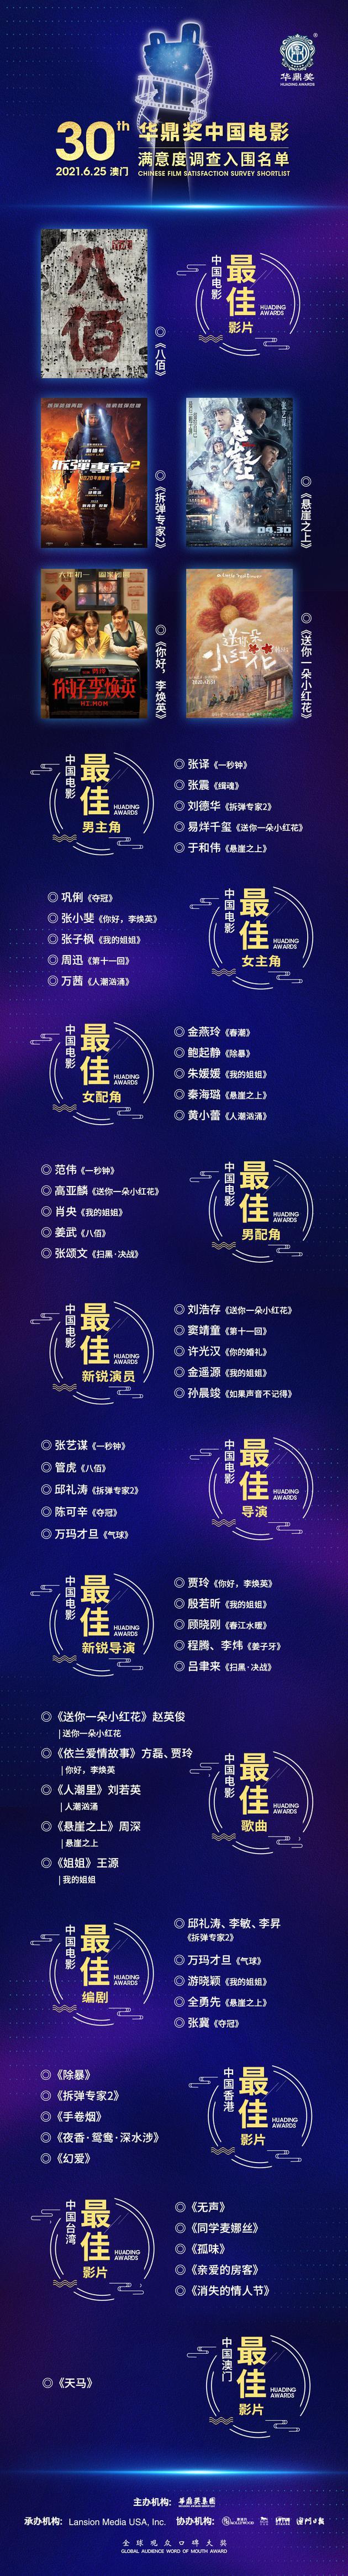 第30届华鼎奖提名名单 中国电影满意度调查提名名单（第25届华鼎奖提名名单）